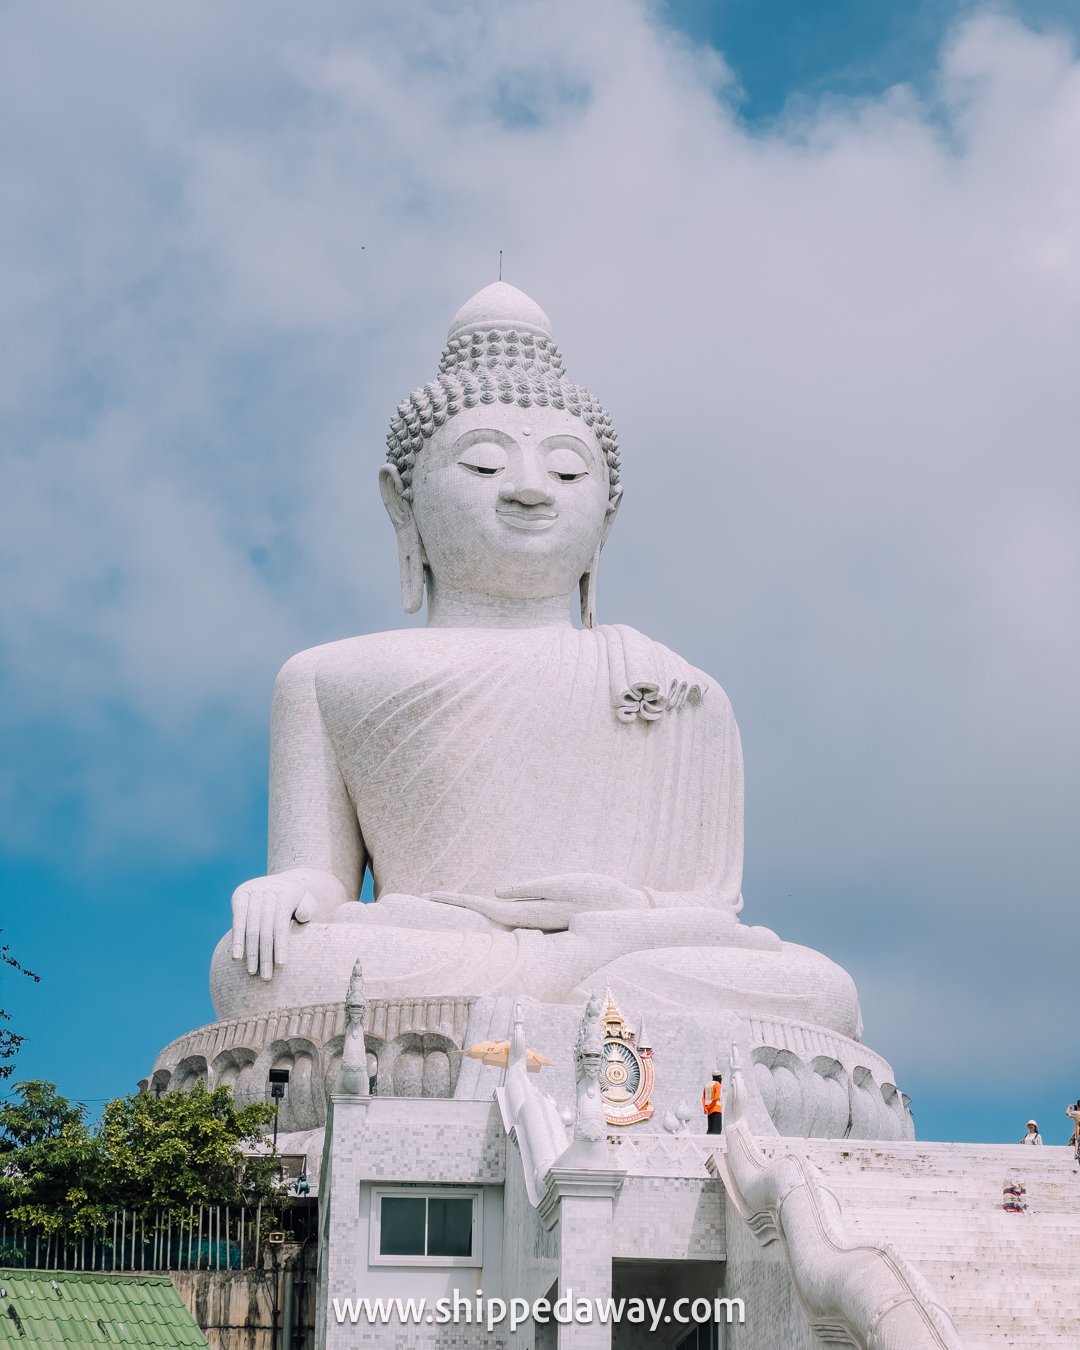 45 meter tall white marble Big Buddha, Phuket, Thailand